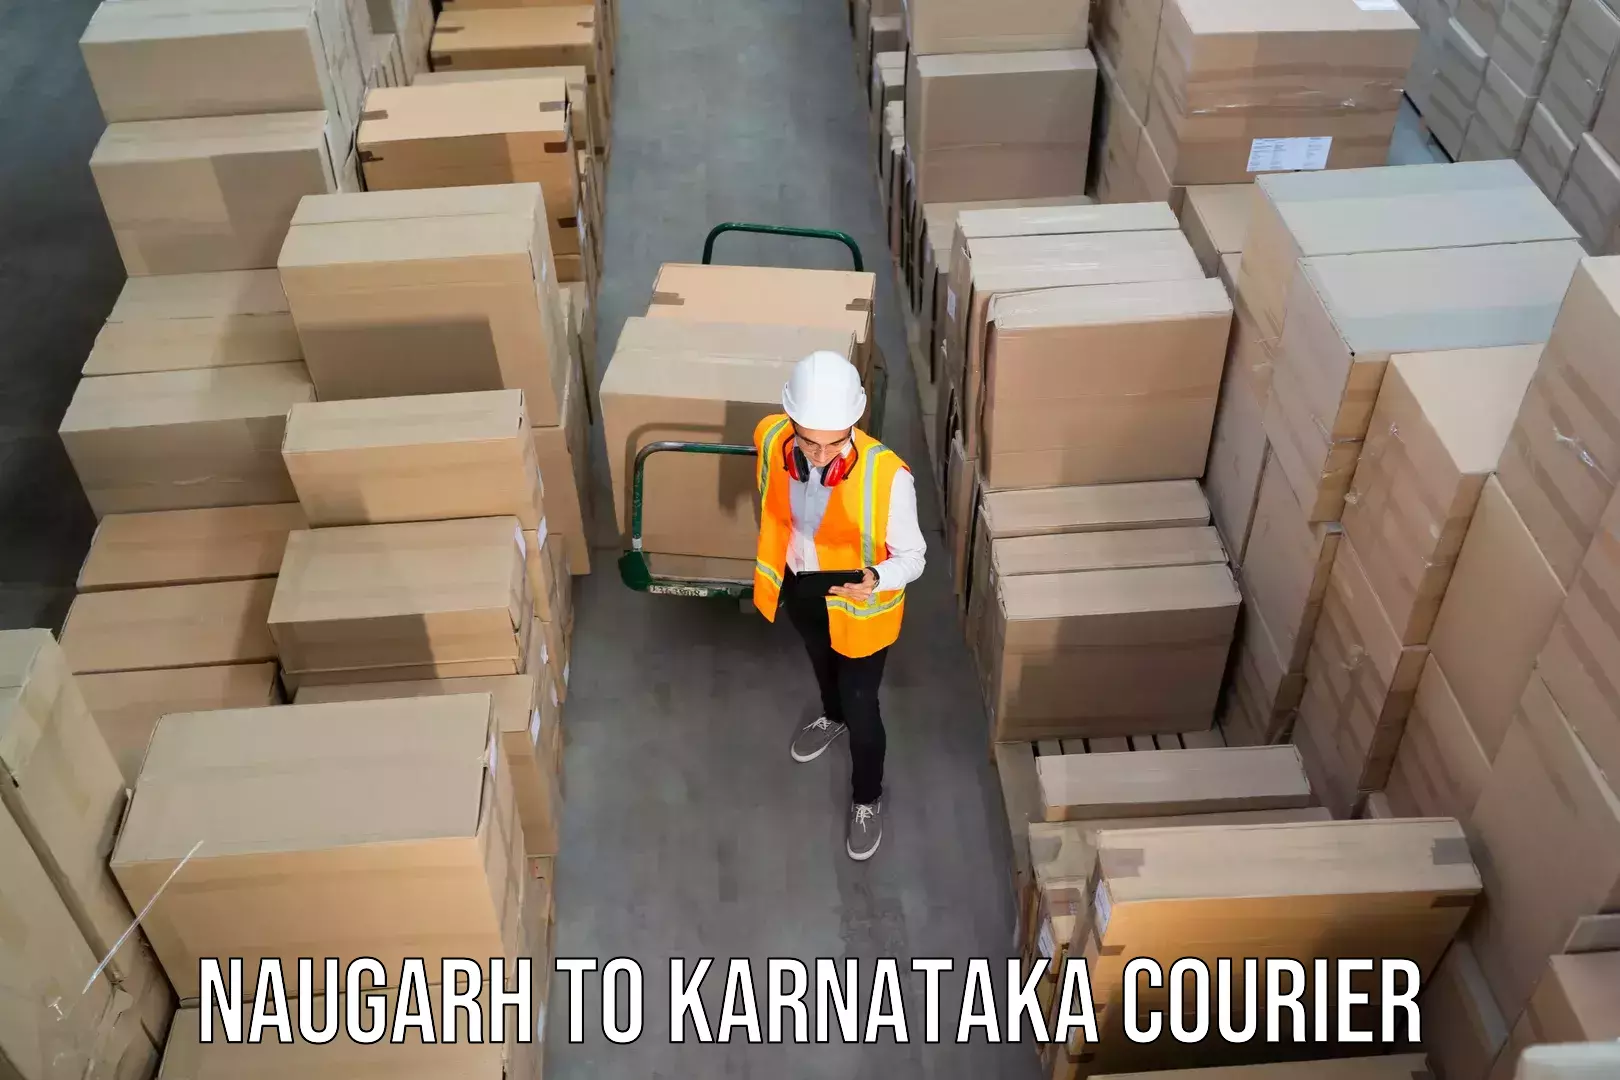 Full-service courier options Naugarh to Karnataka